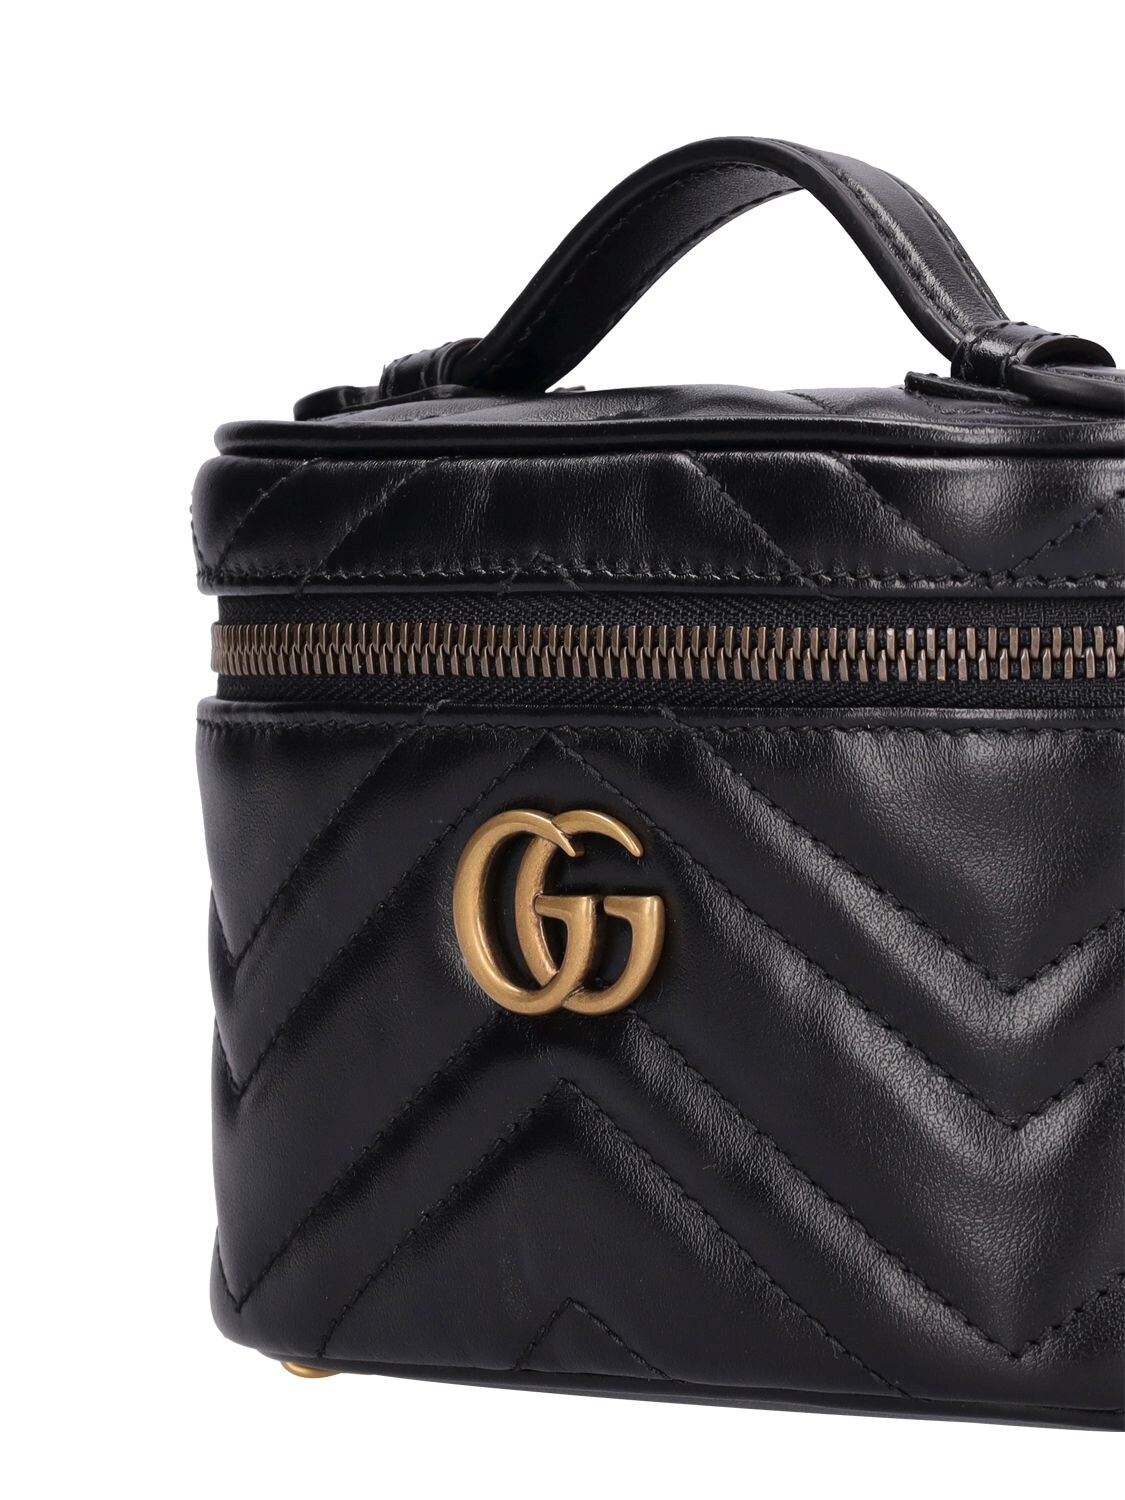 Gucci Bags | Gucci Gg Marmont Leather Mini Chain Bag Black | Color: Black/Gold/Red | Size: Mini | Wdotsara's Closet